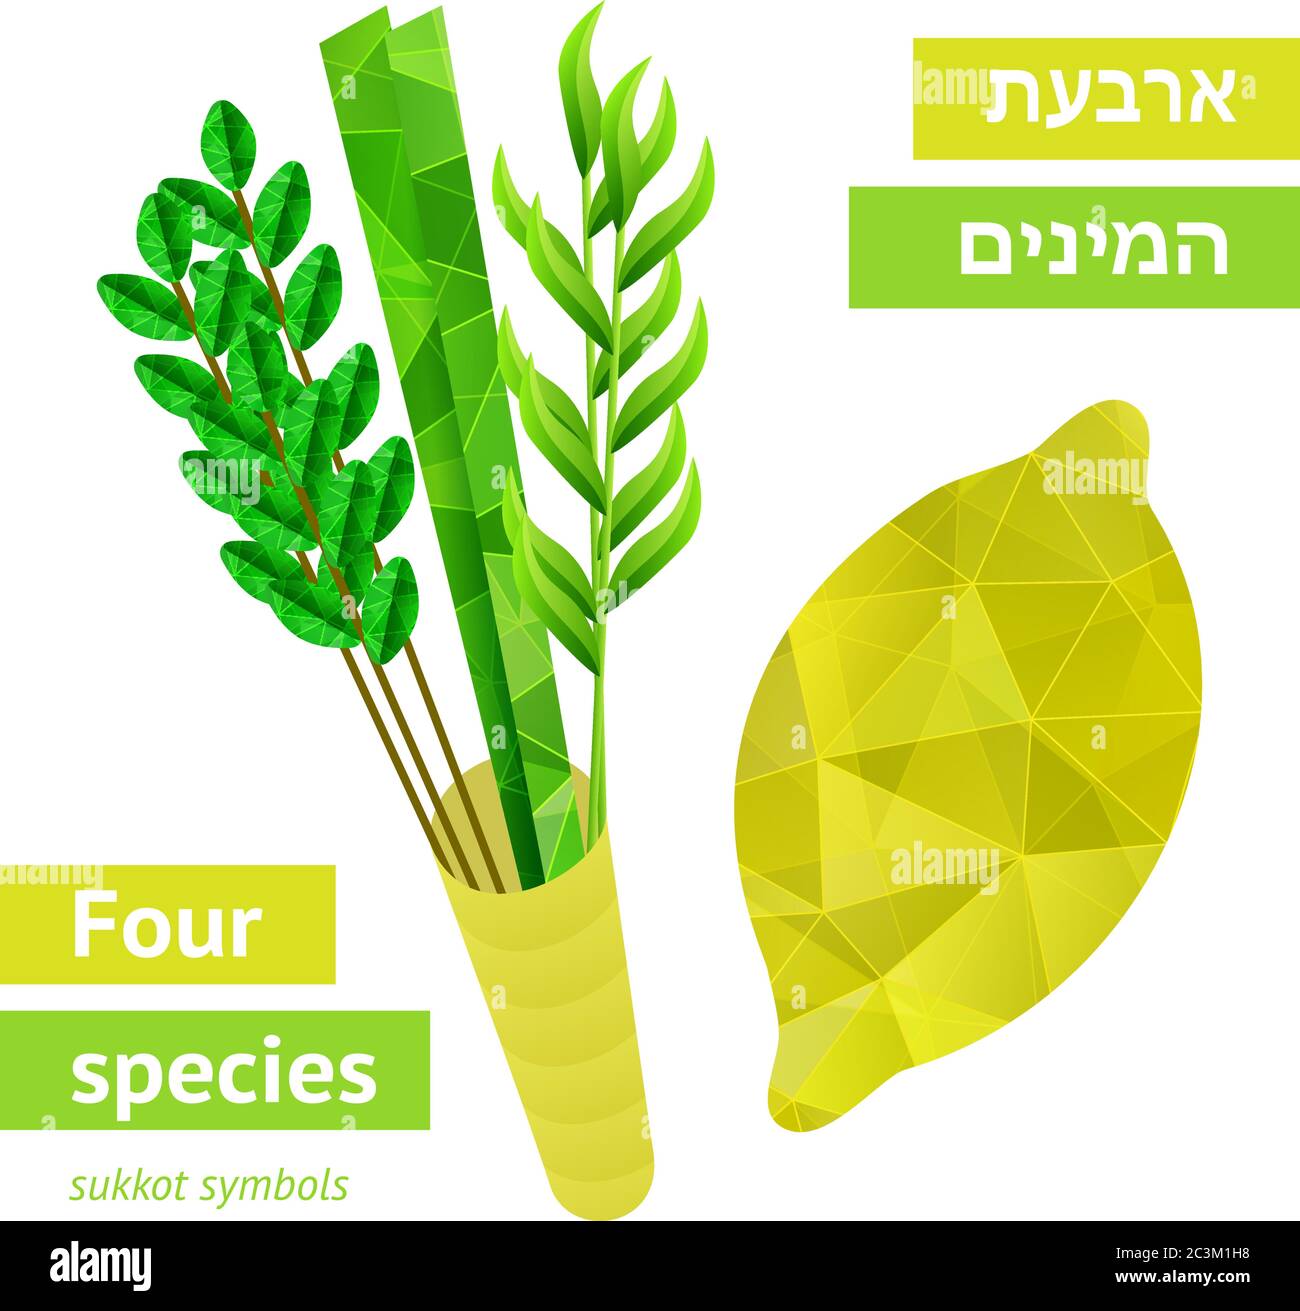 Vier Arten - Palme, Weide, Myrte, Etrog - Symbole der jüdischen Feiertag Sukkot. Vektorgrafik. Stock Vektor